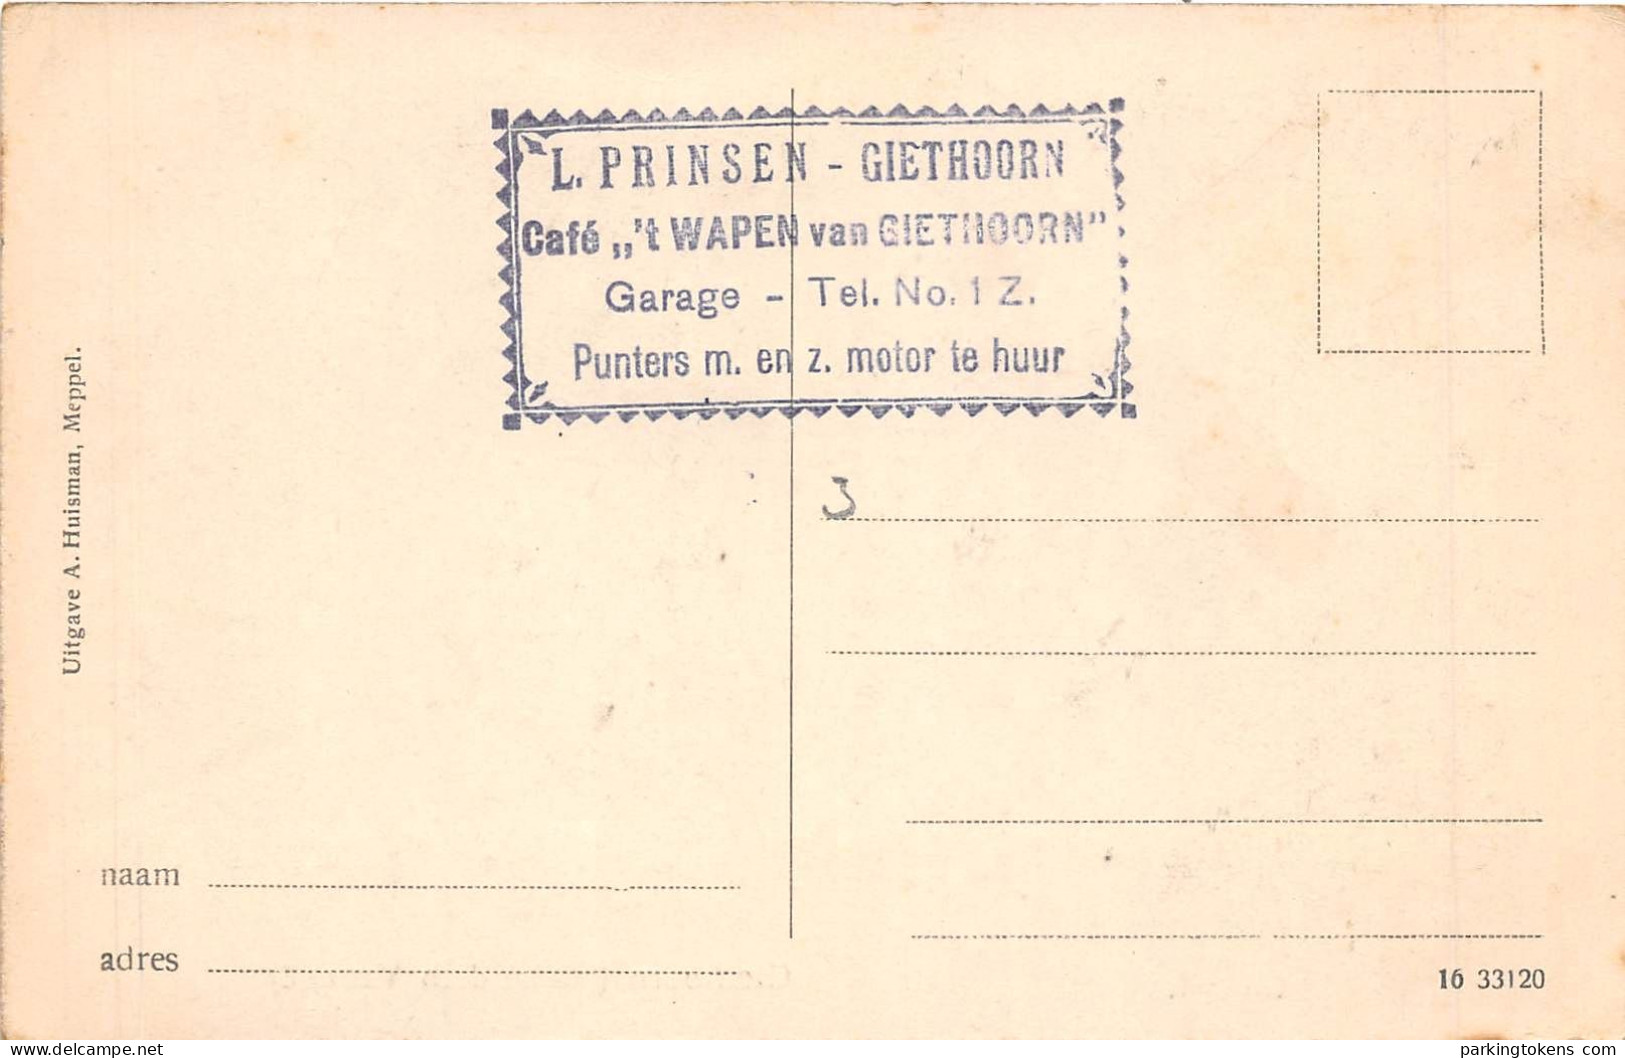 E752 - Giethoorn Hollandsch Venetië - Vol Formaat Kaart - Uitg A Huisman Meppel 1916 - - Giethoorn